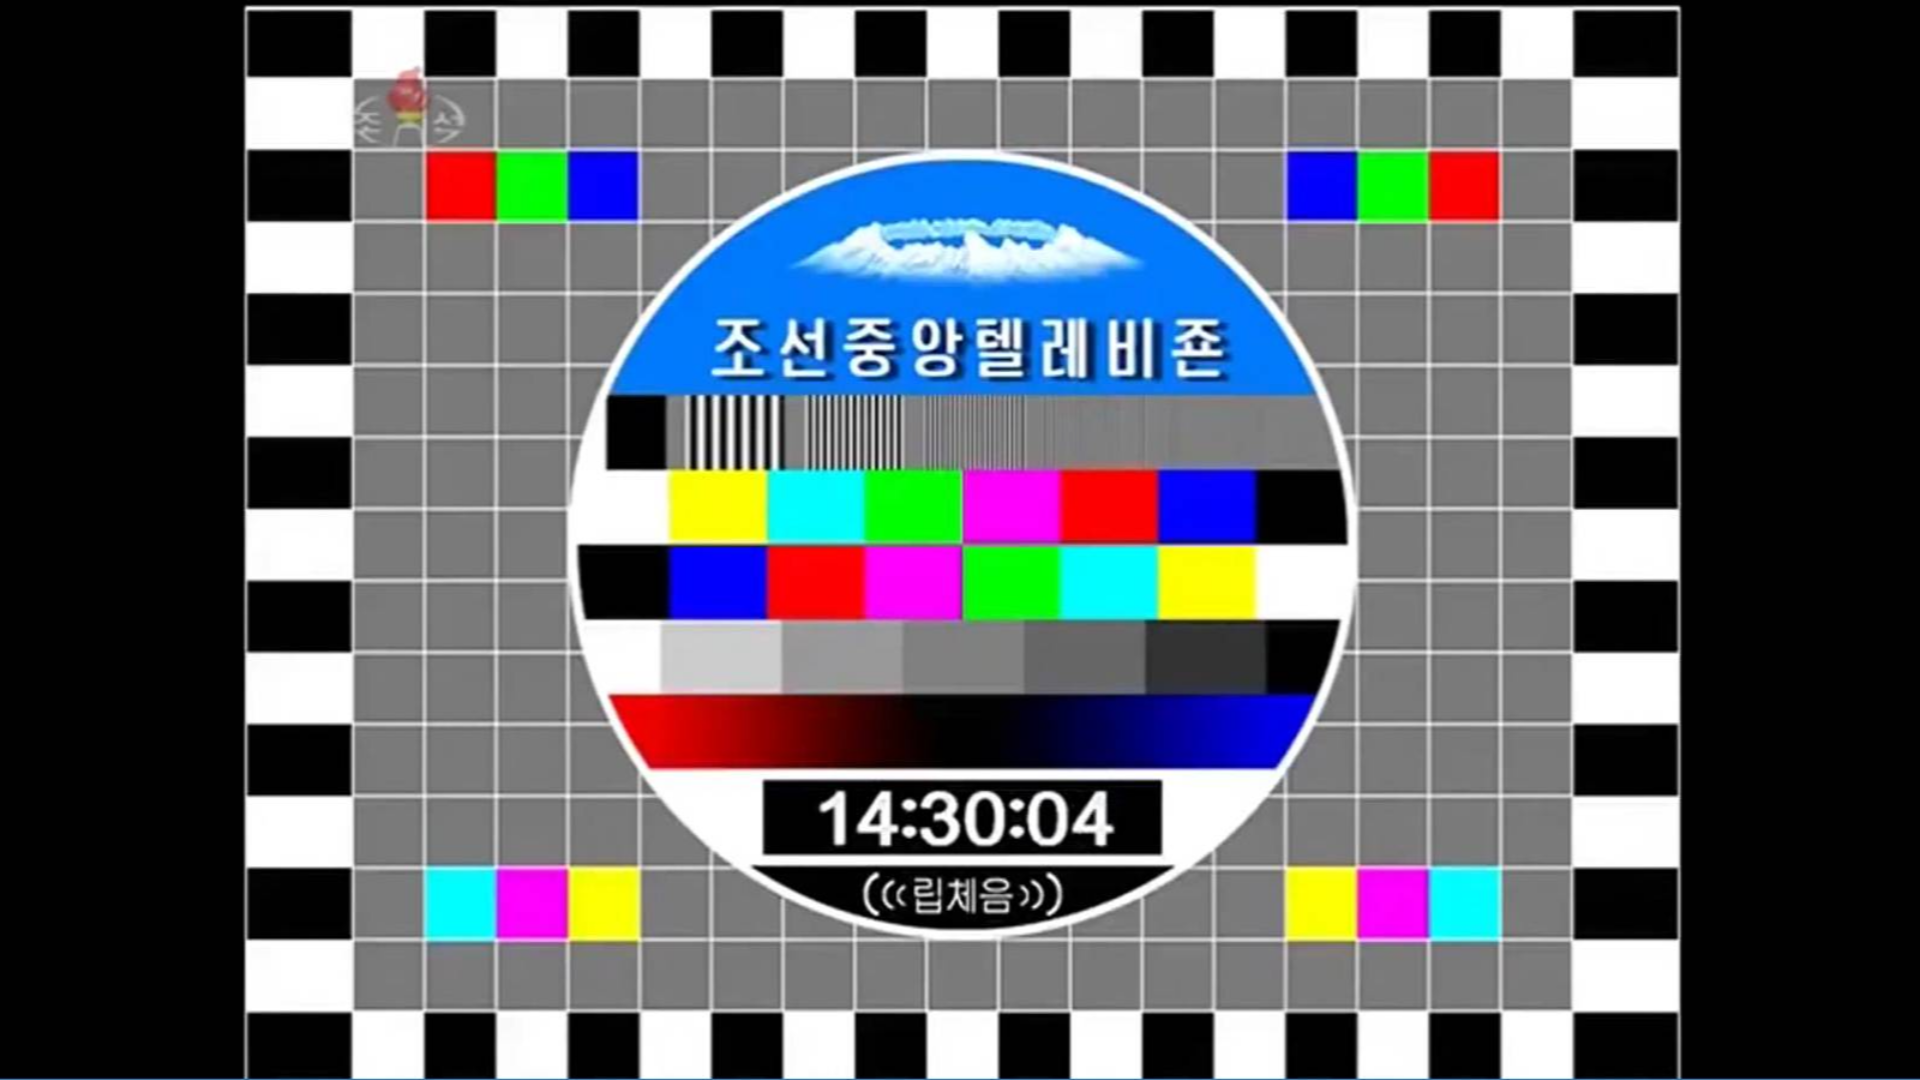 2020-01-04 关注 【放送文化】朝鲜中央电视台开播前测试卡过程(2017